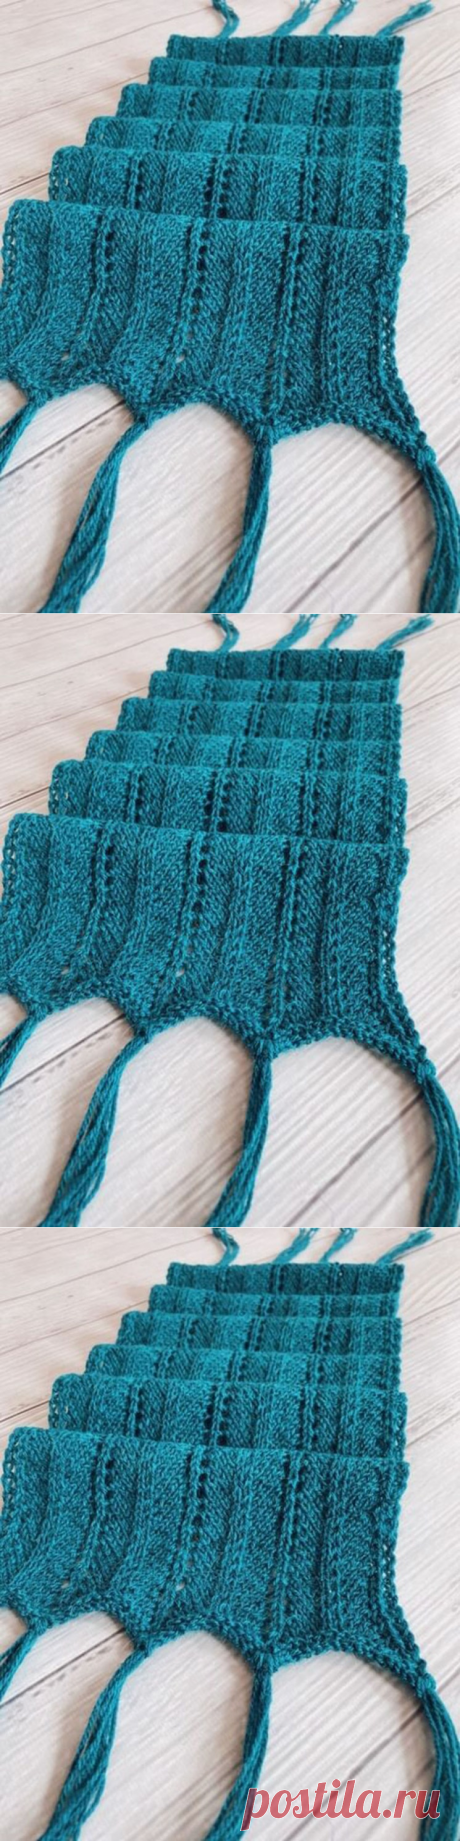 Очень подробный МК ажурного шарфа с кистями (Вязание спицами) – Журнал Вдохновение Рукодельницы